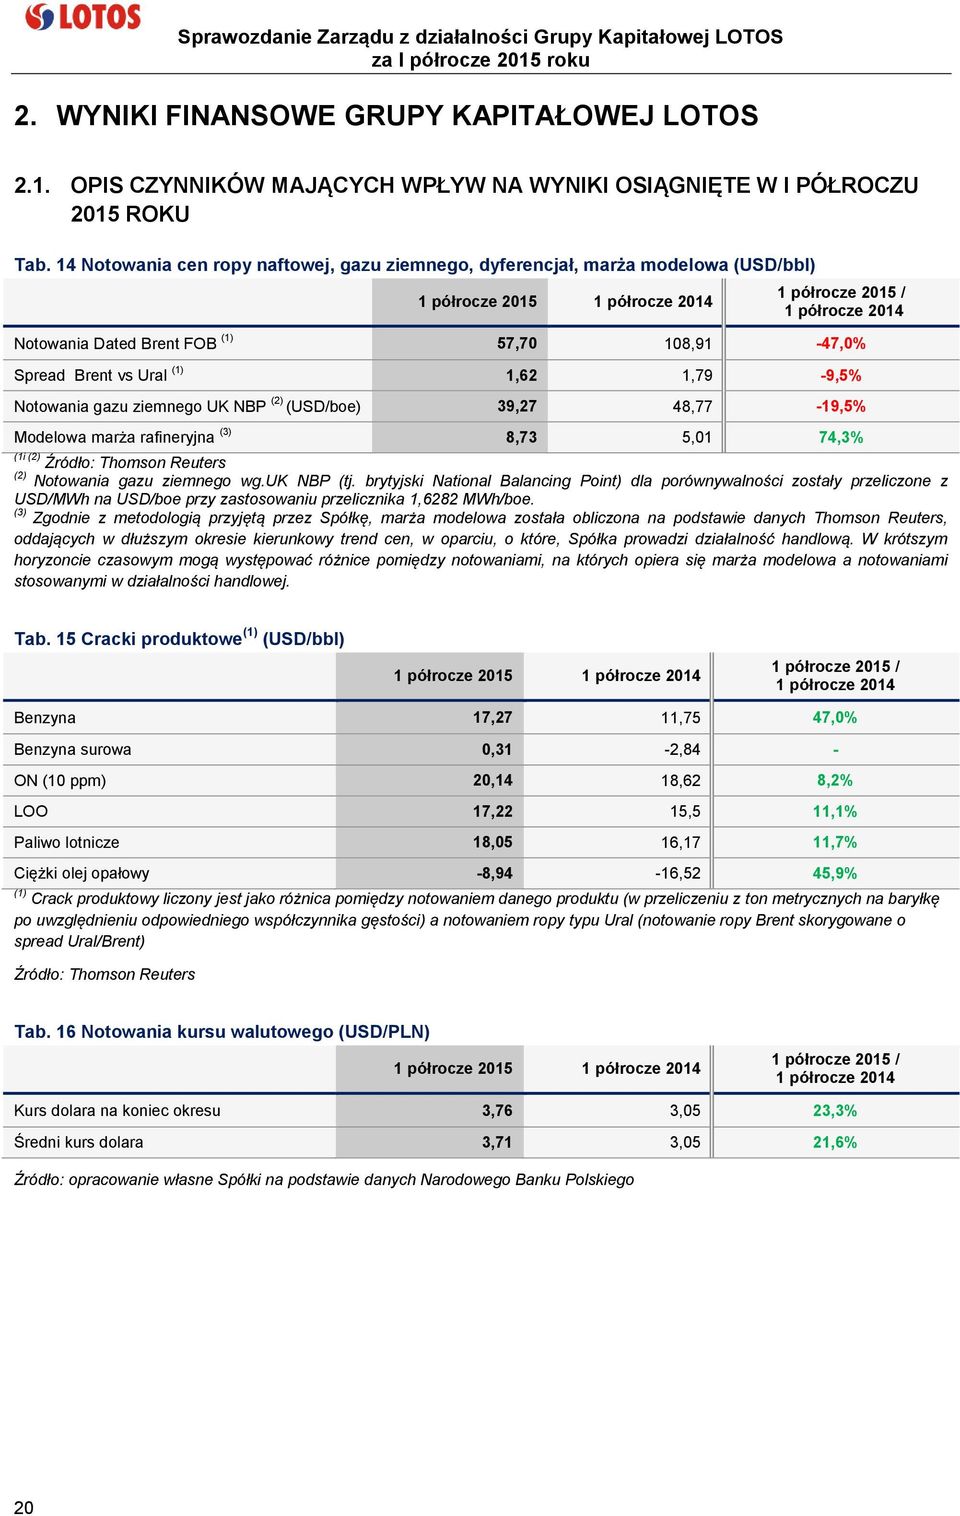 Spread Brent vs Ural (1) 1,62 1,79-9,5% Notowania gazu ziemnego UK NBP (2) (USD/boe) 39,27 48,77-19,5% Modelowa marża rafineryjna (3) 8,73 5,01 74,3% (1i (2) Źródło: Thomson Reuters (2) Notowania